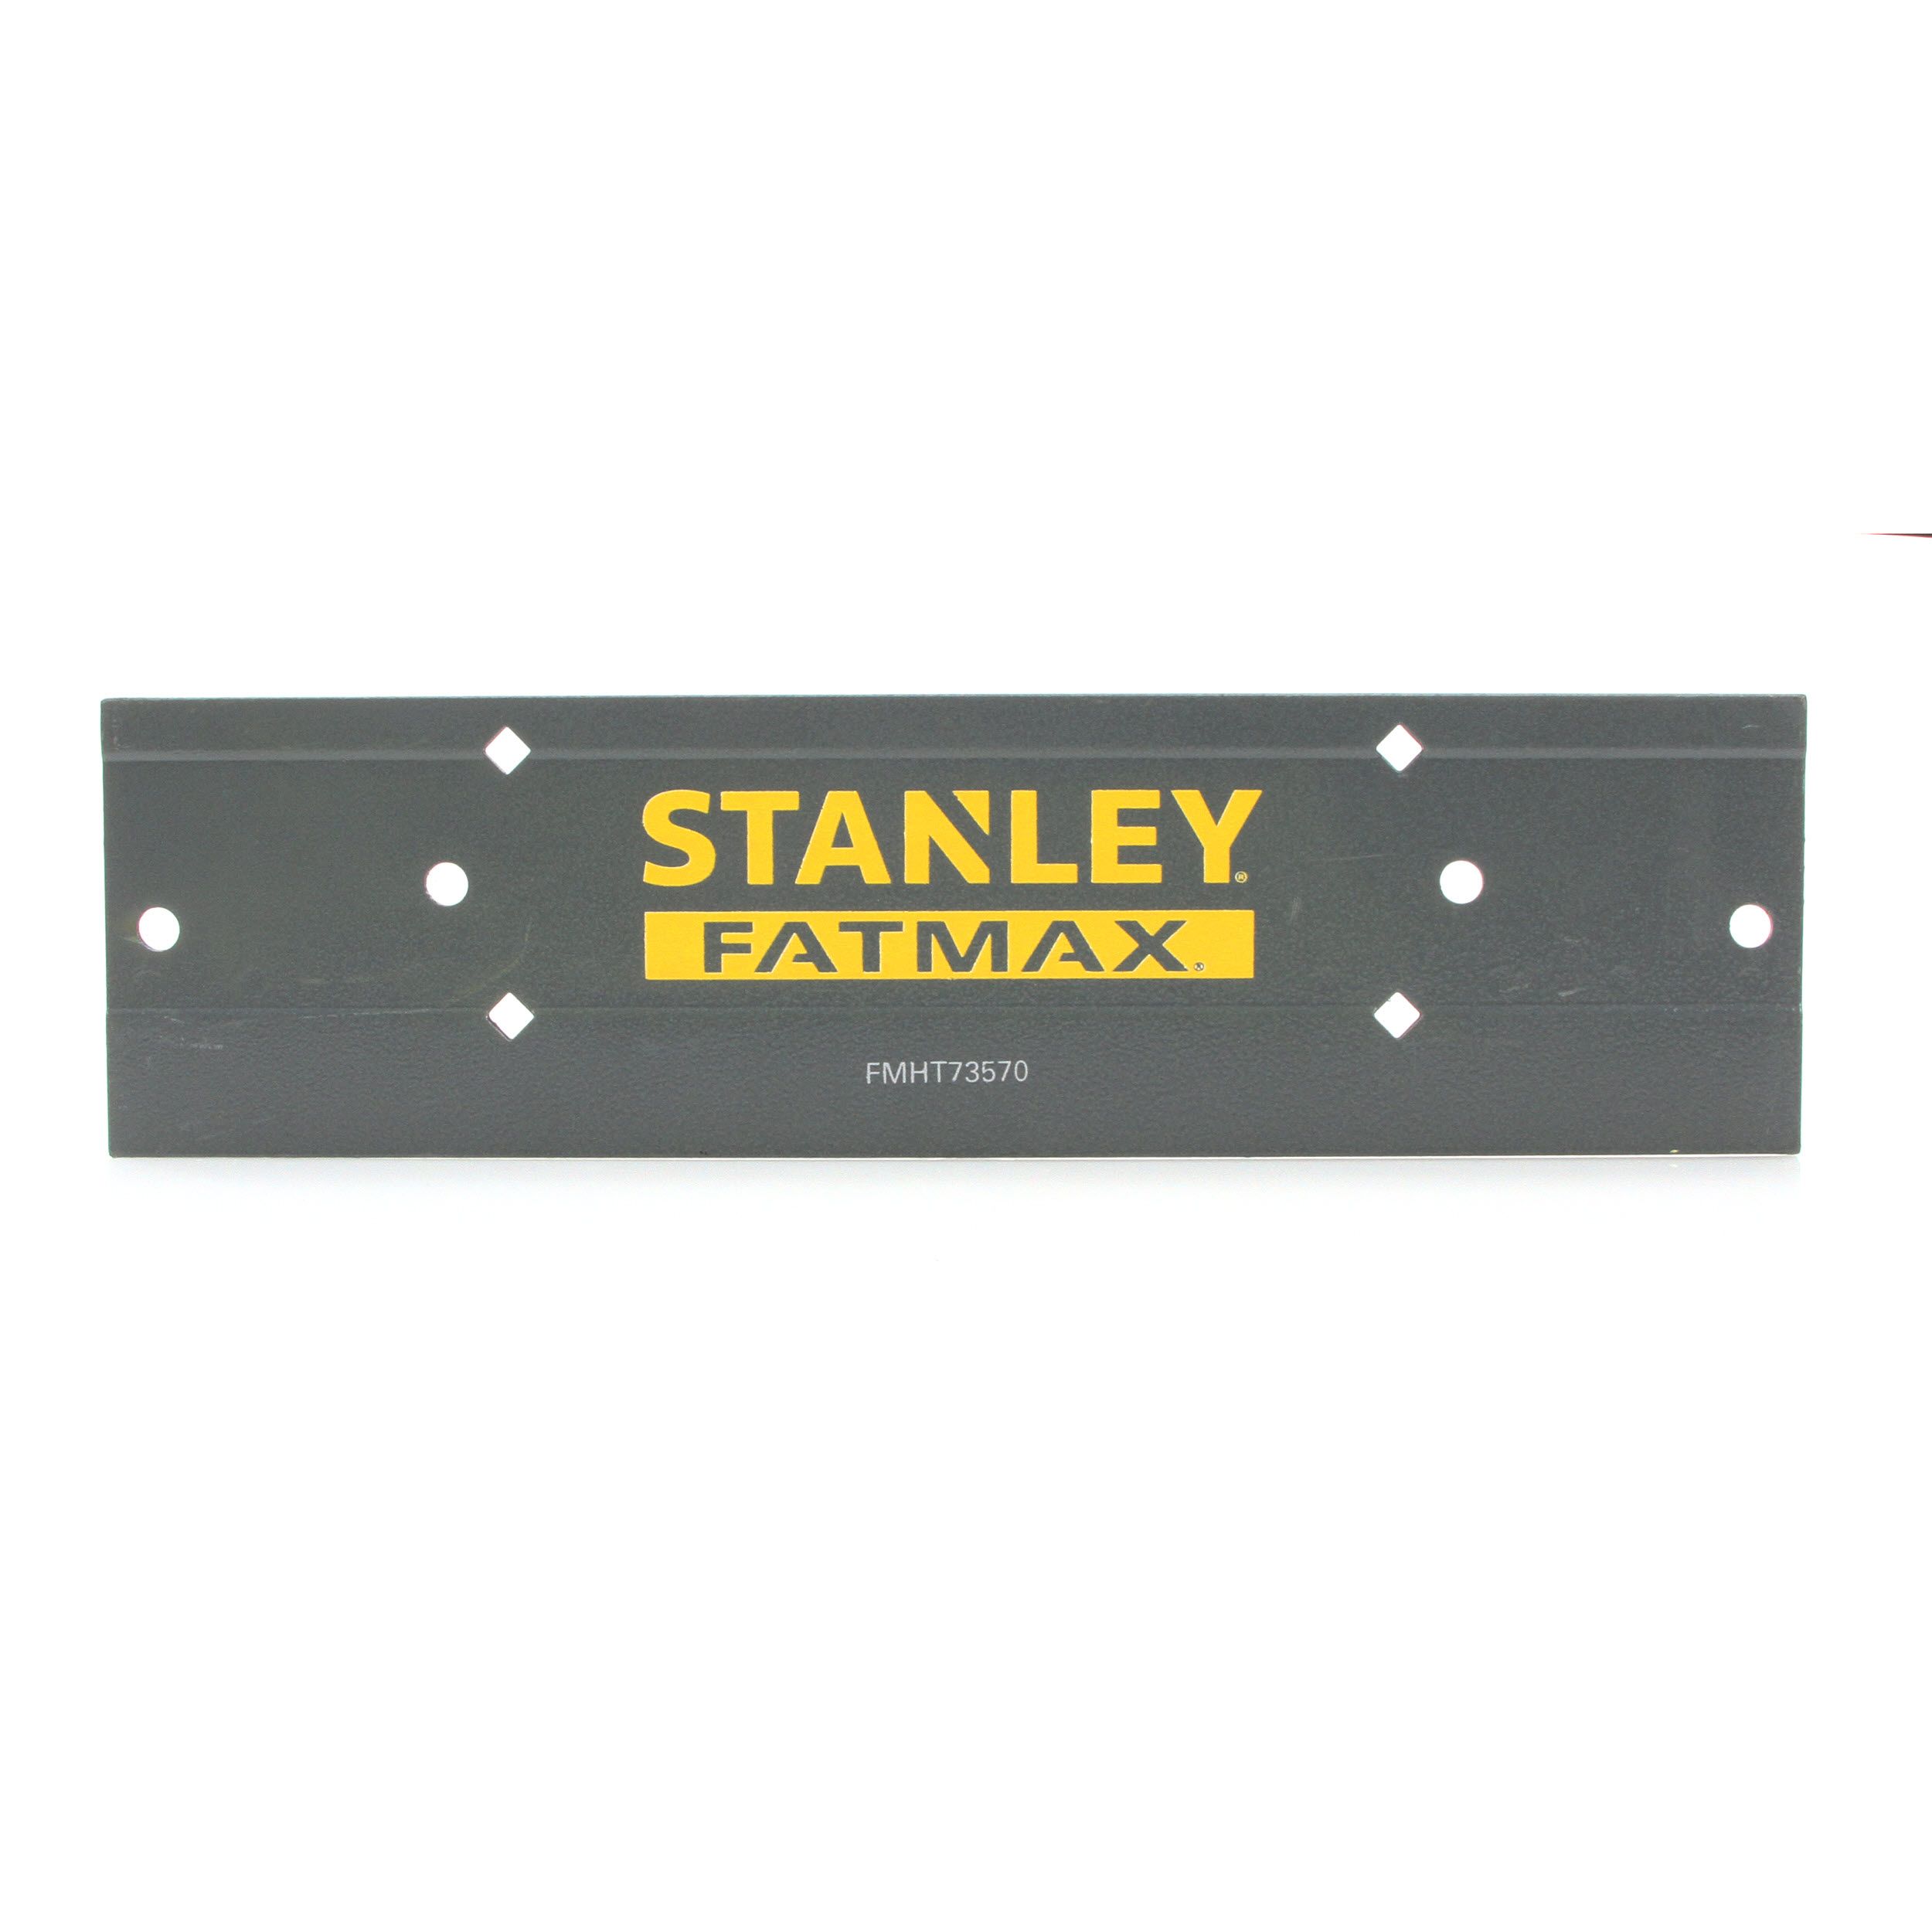 FMHT73570 Stanley FATMAX 12" Sheet Metal Folding Tool Bender Flashing Fascia 